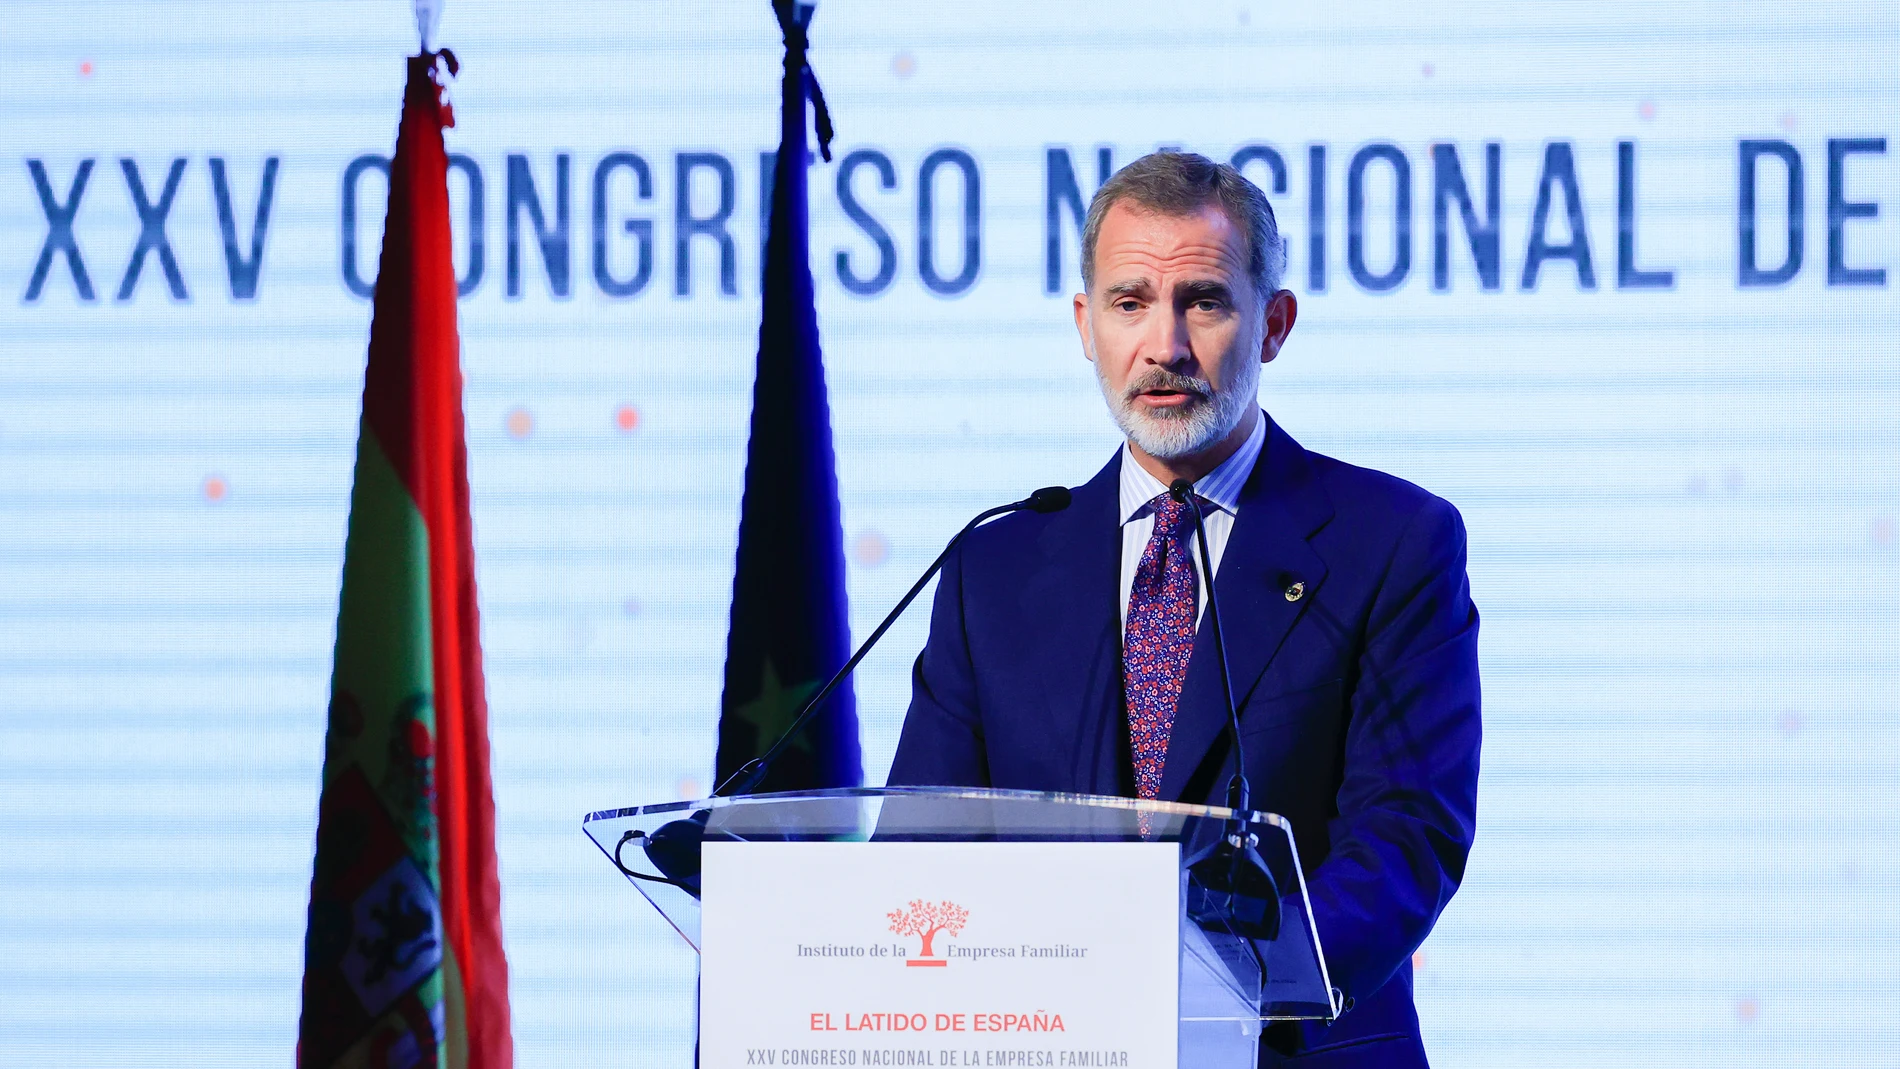 Su Majestad el rey Felipe VI preside la inauguración del XXV Congreso Nacional de la Empresa Familiar que se celebra, este lunes, en Cáceres